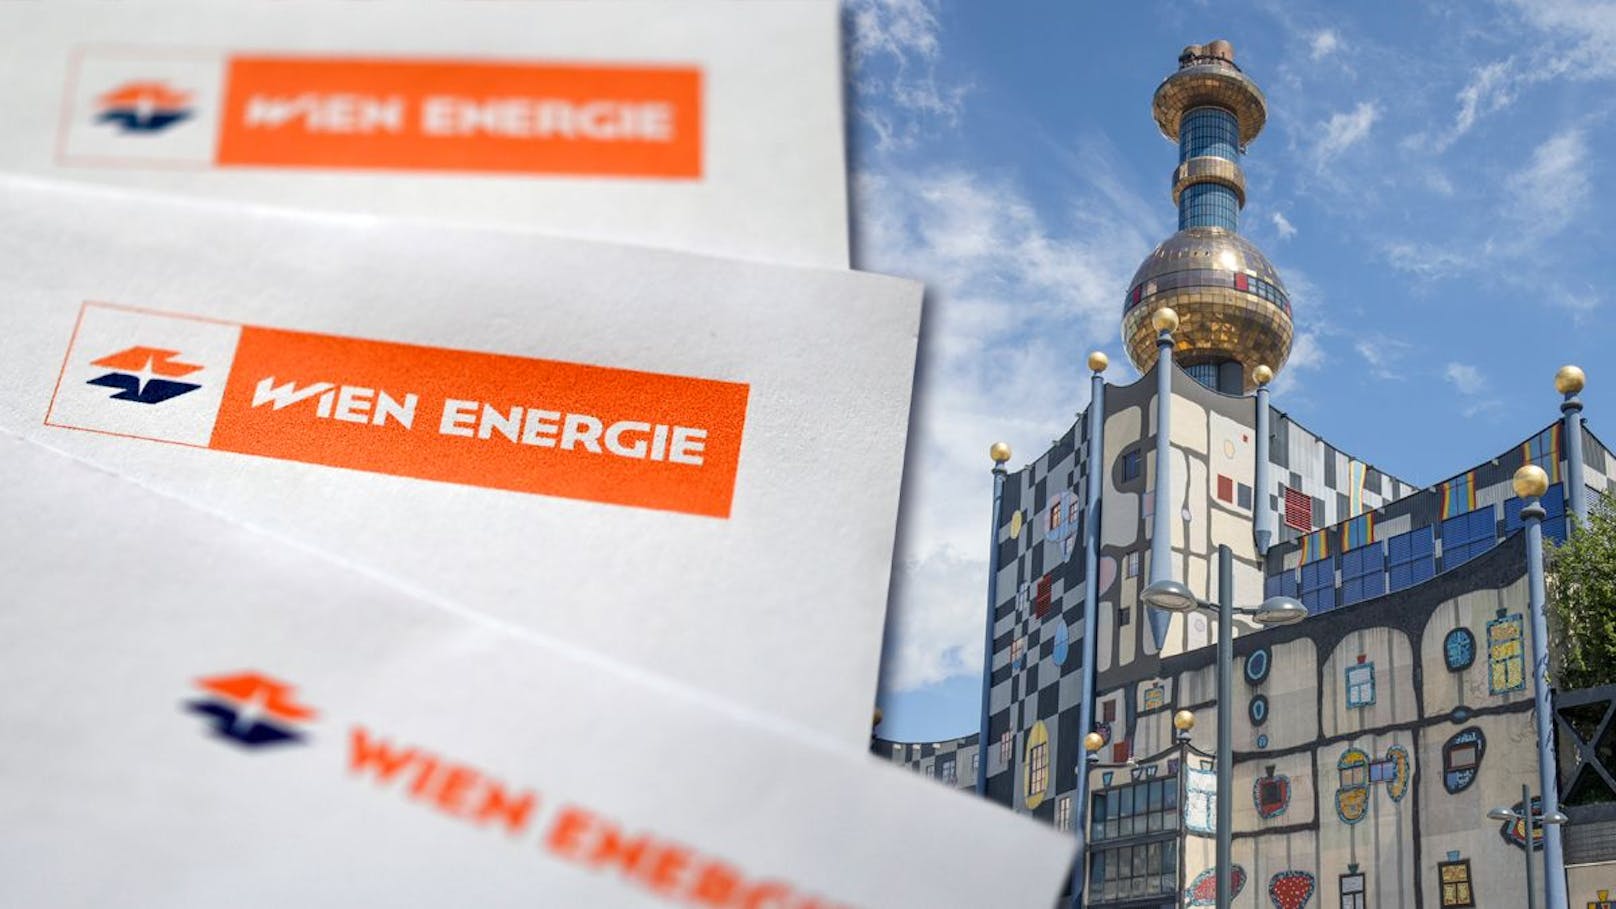 Beim Anblick von Wien-Energie-Briefen wird vielen Kunden ungut. Doch nicht Mark.